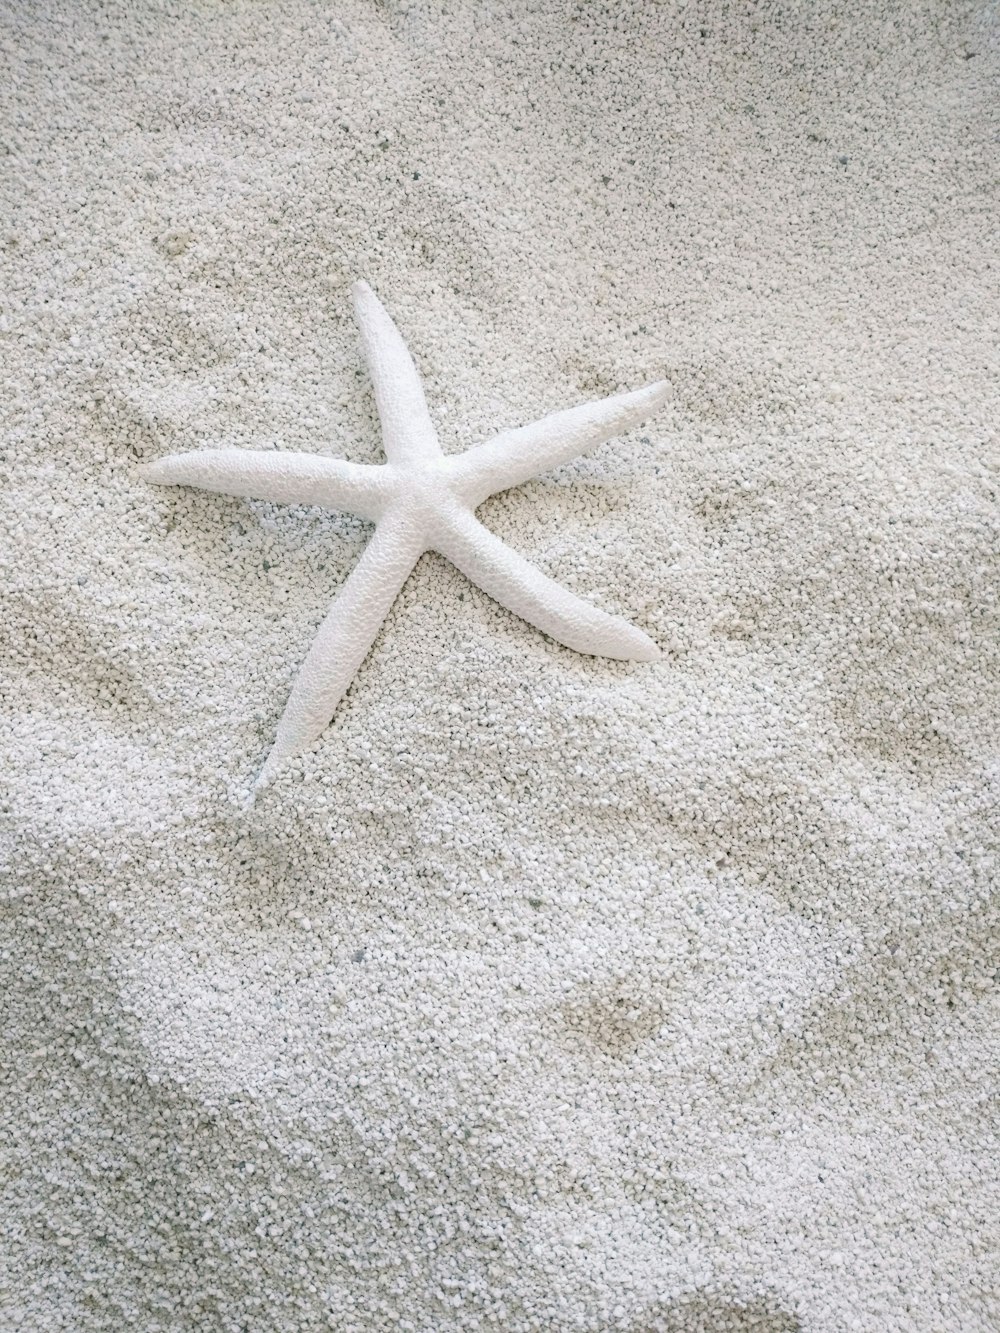 white starfish on white sand